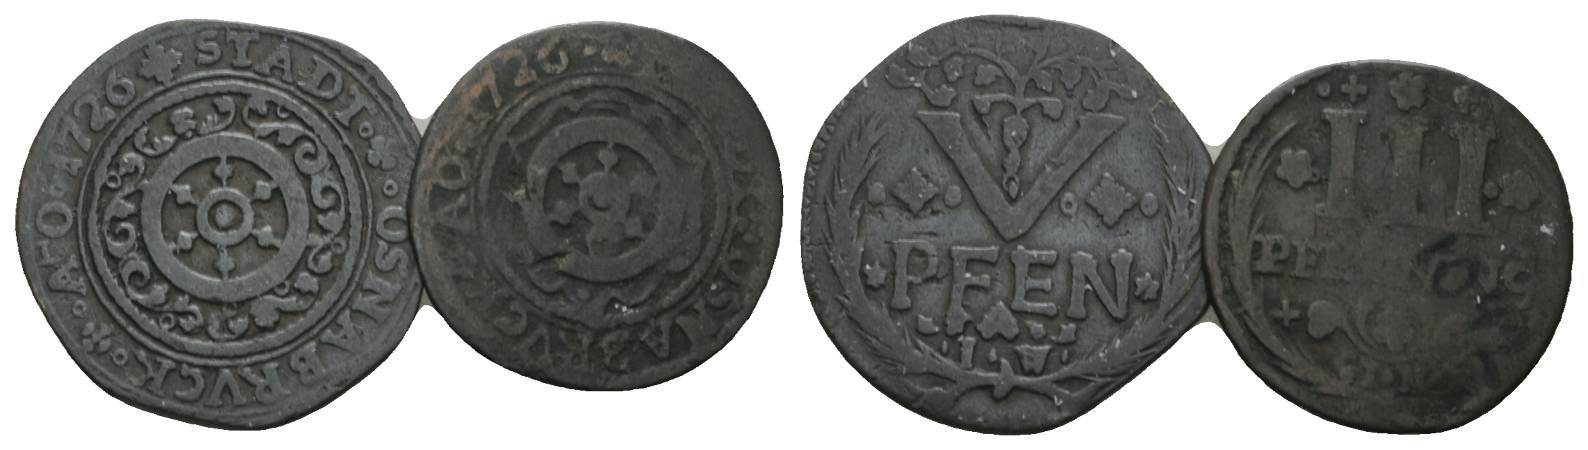  Altdeutschland, 2 Kleinmünzen (1726)   